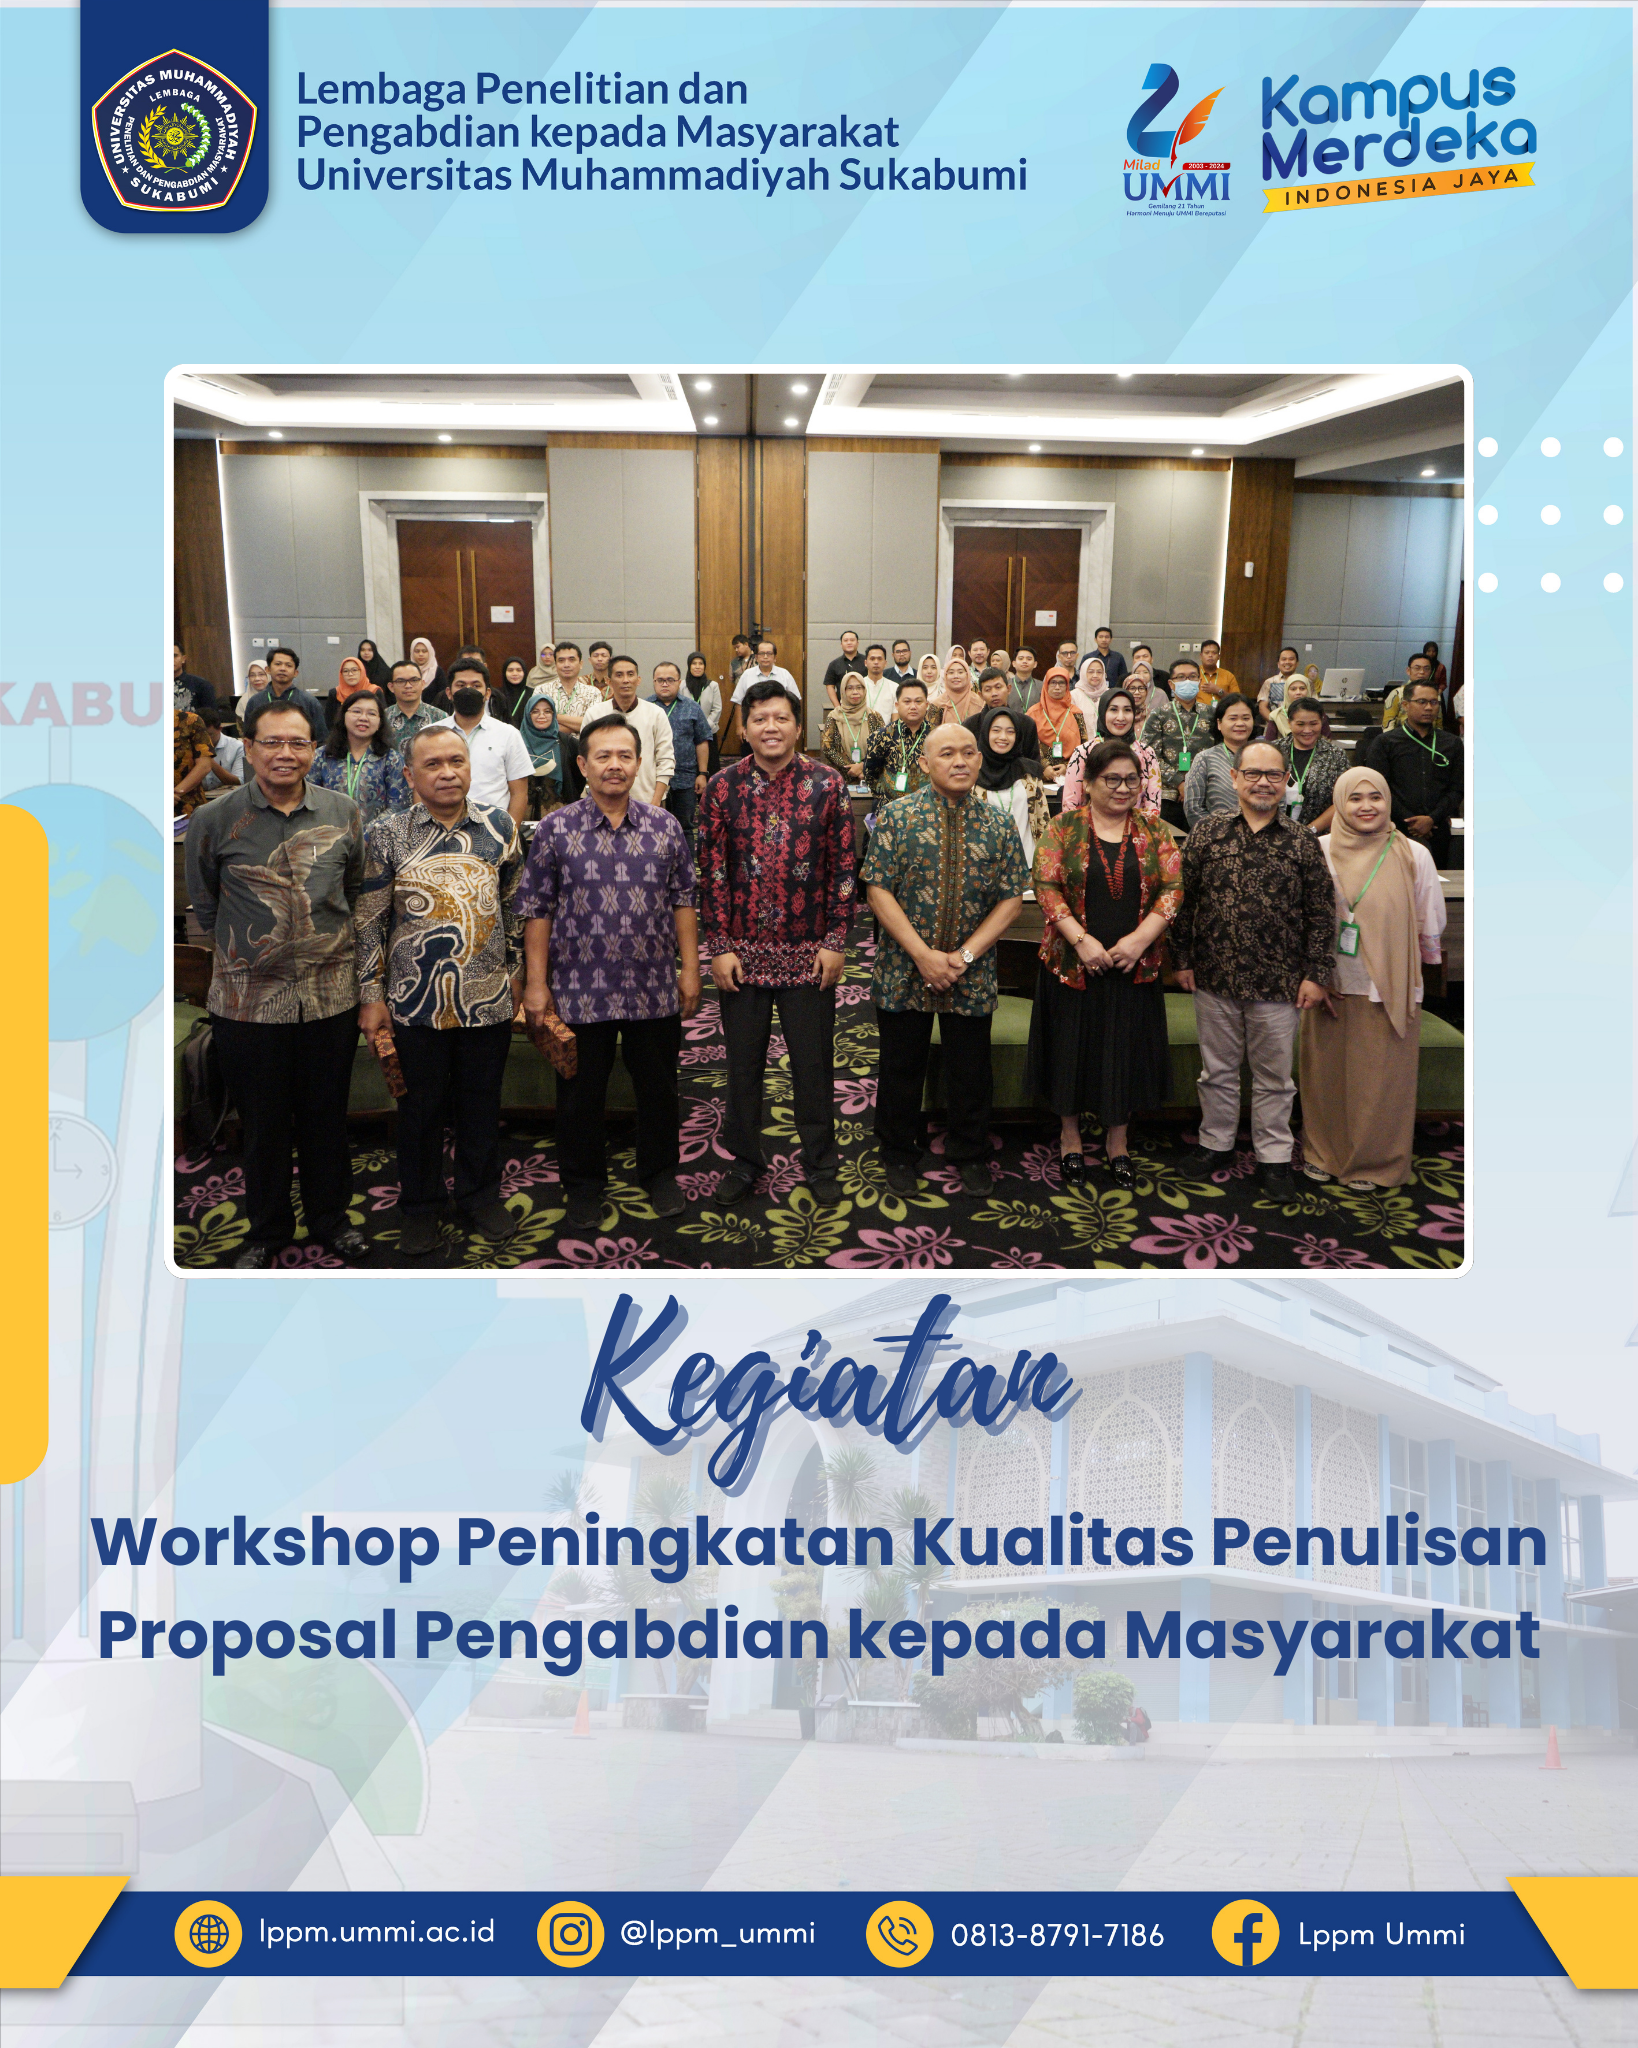 Workshop Peningkatan Kualitas Penulisan Proposal Pengabdian kepada Masyarakat